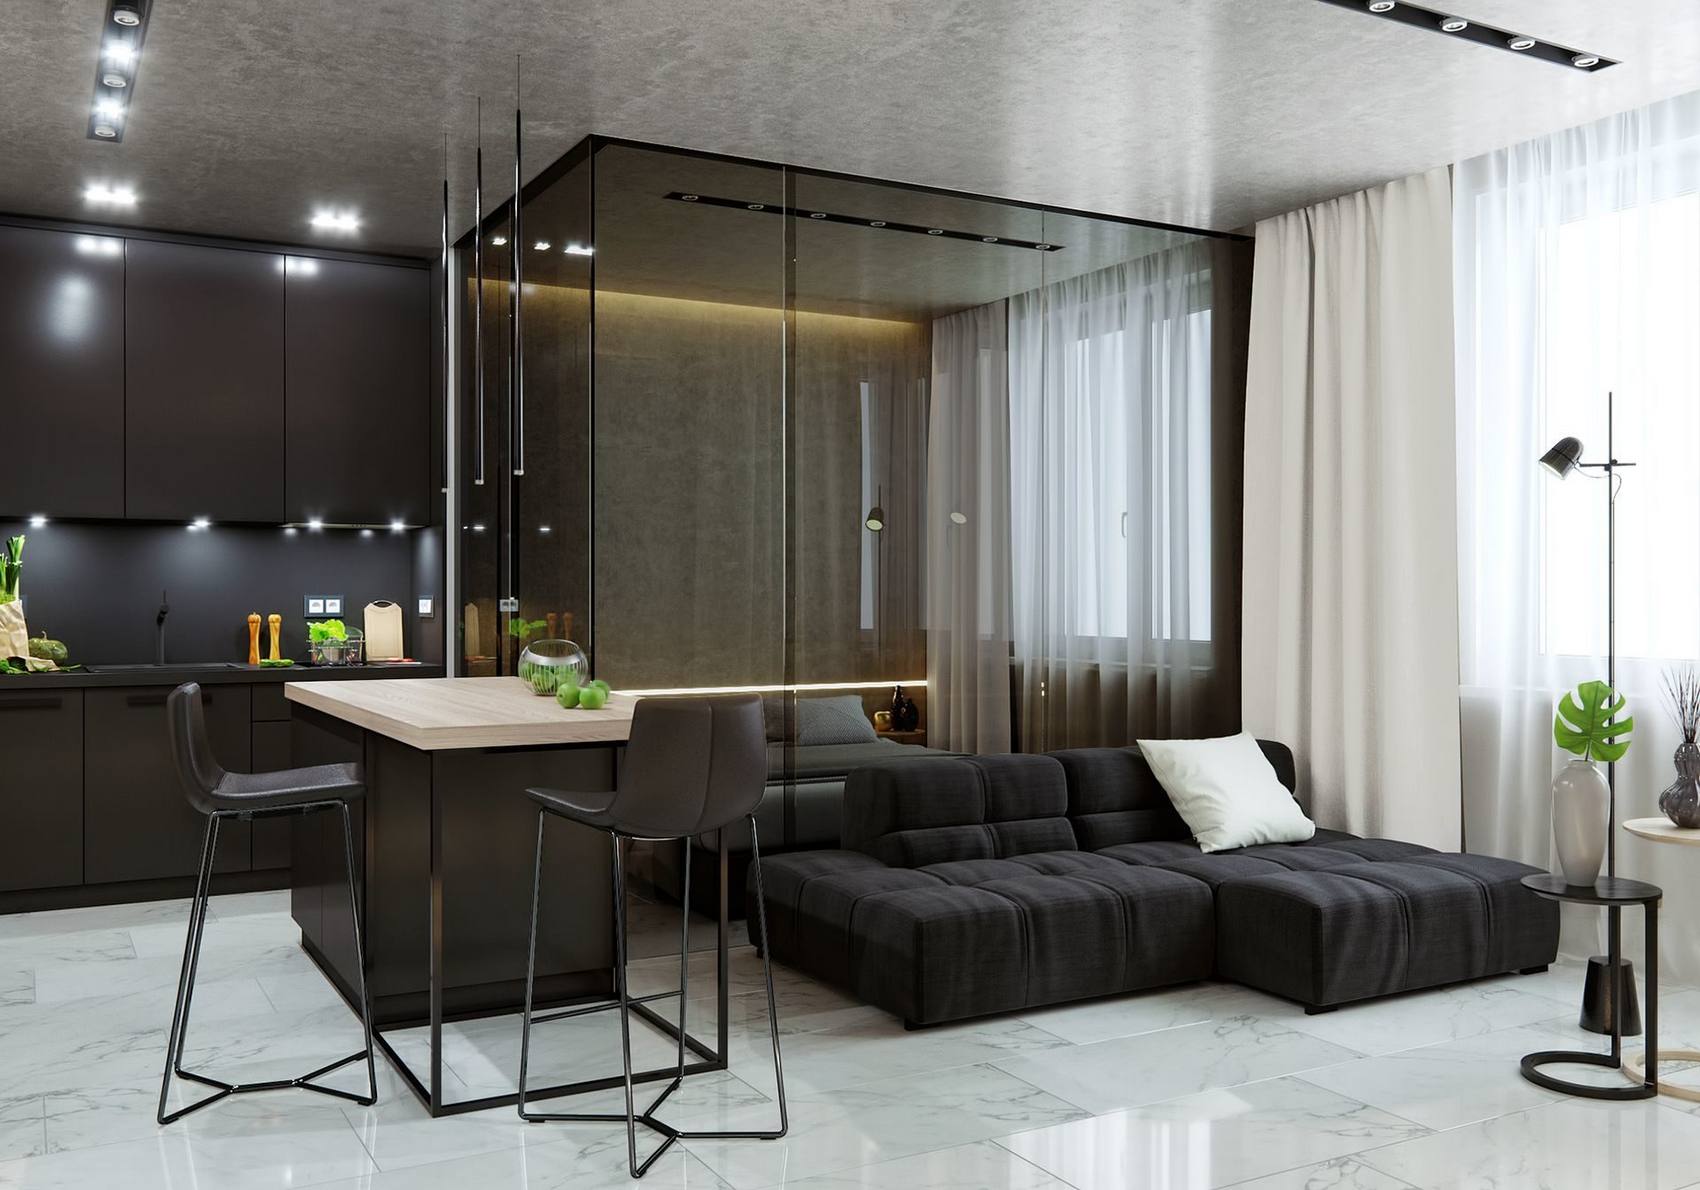 Vì diện tích căn hộ chỉ vỏn vẹn 38m² nên thiết kế mở là giải pháp hợp lý hơn cả. Phòng khách với ghế sofa kiểu module màu đen nổi bật trên nền đá hoa cương trắng, bàn nước nhỏ nhắn với chậu gốm cao duyên dáng cùng đèn sàn cung cấp ánh sáng tiện nghi.